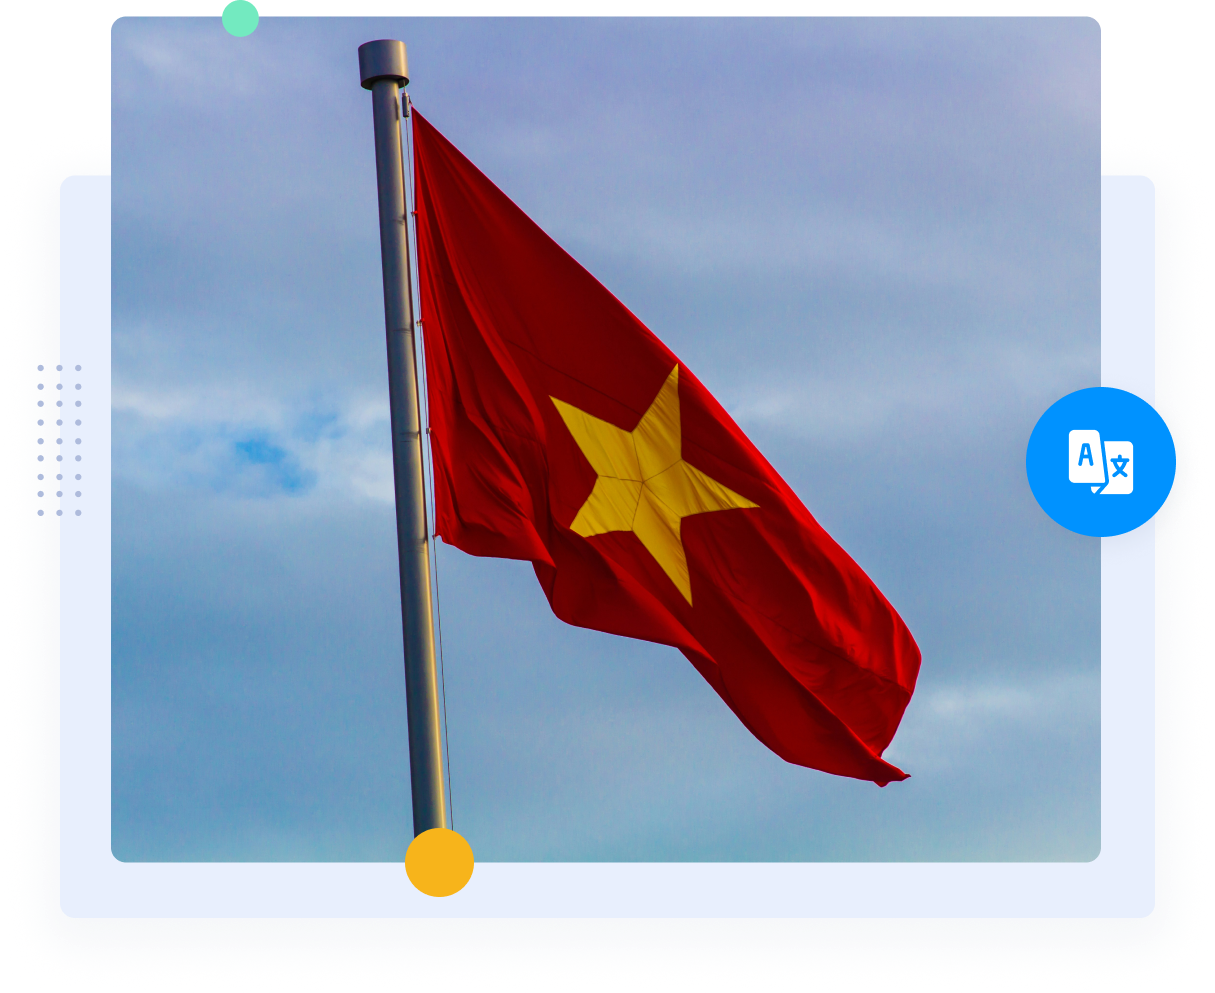 Красный флаг Вьетнама с желтой звездой, представляющей вьетнамско-английский перевод.